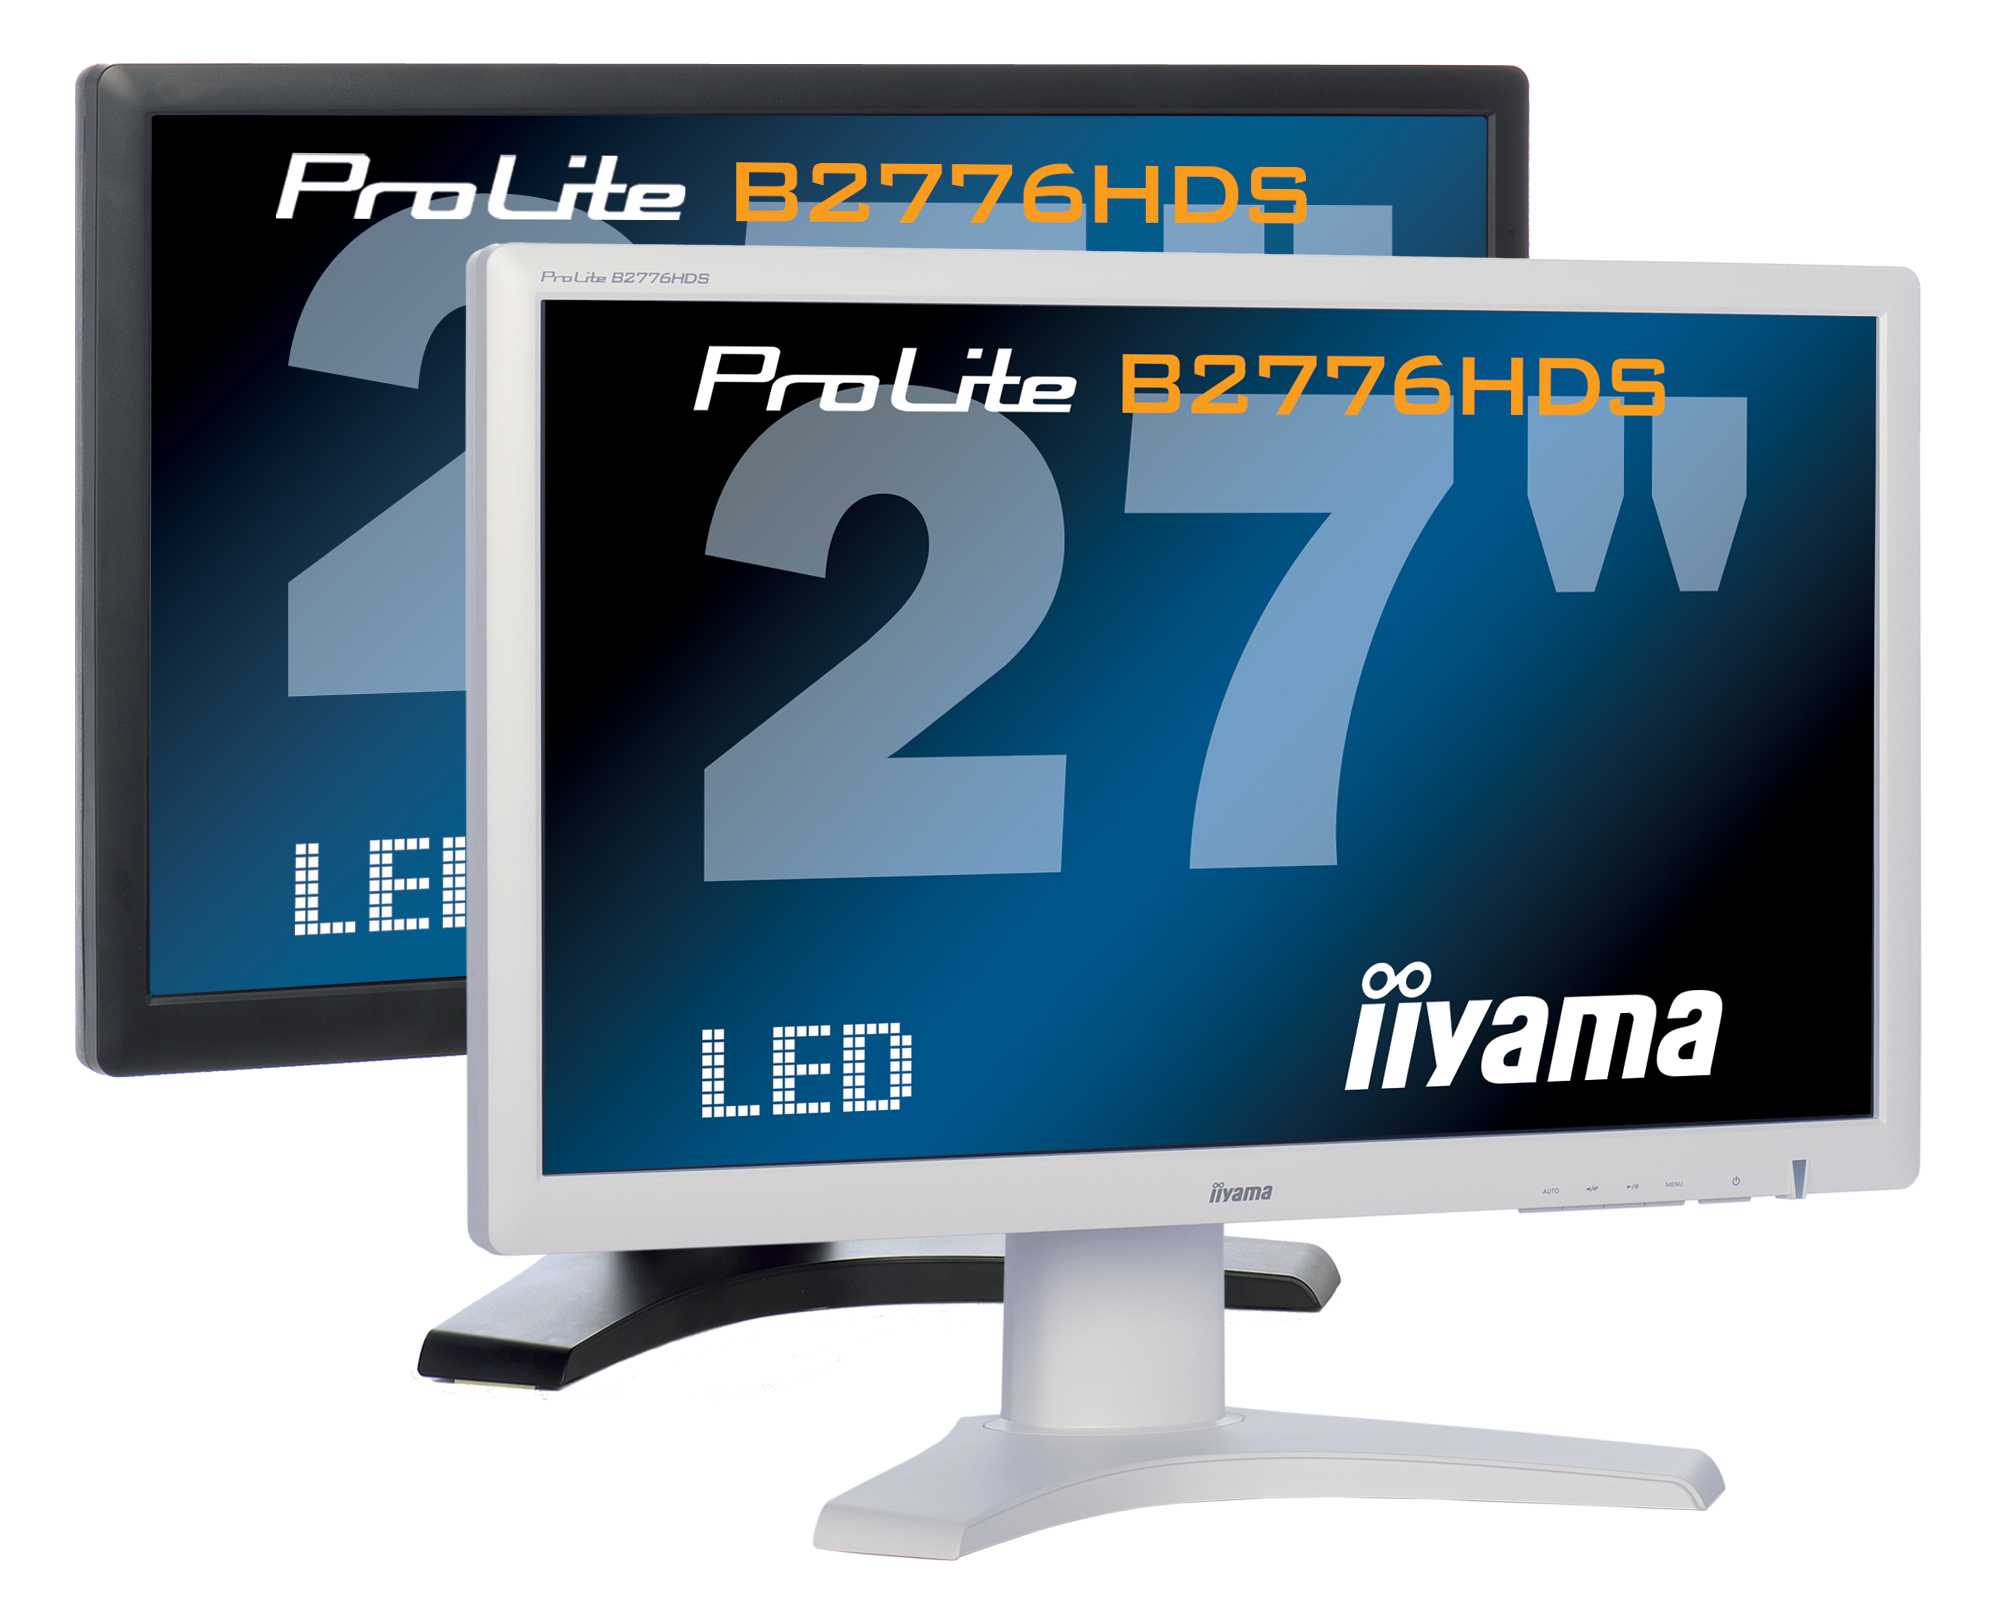 Жк монитор 17" iiyama b1706s-b1 — купить, цена и характеристики, отзывы